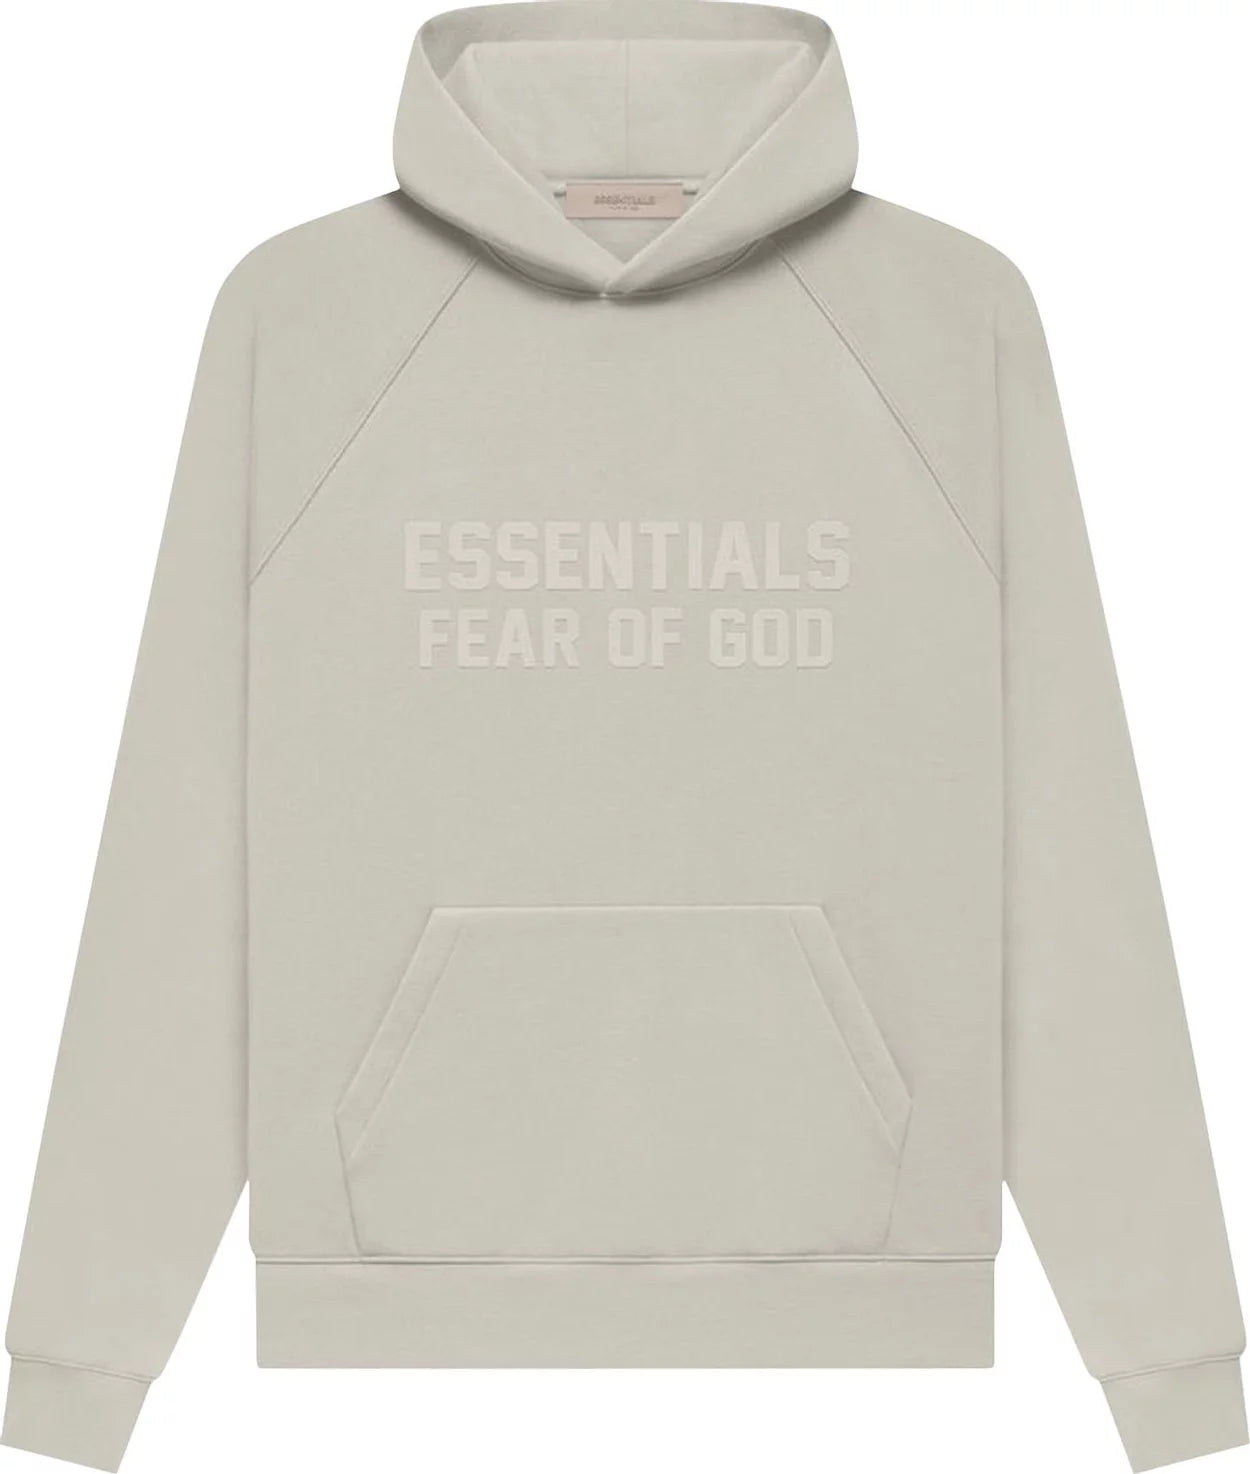 Fear of God Essentials Hoodie Gray Raglan 